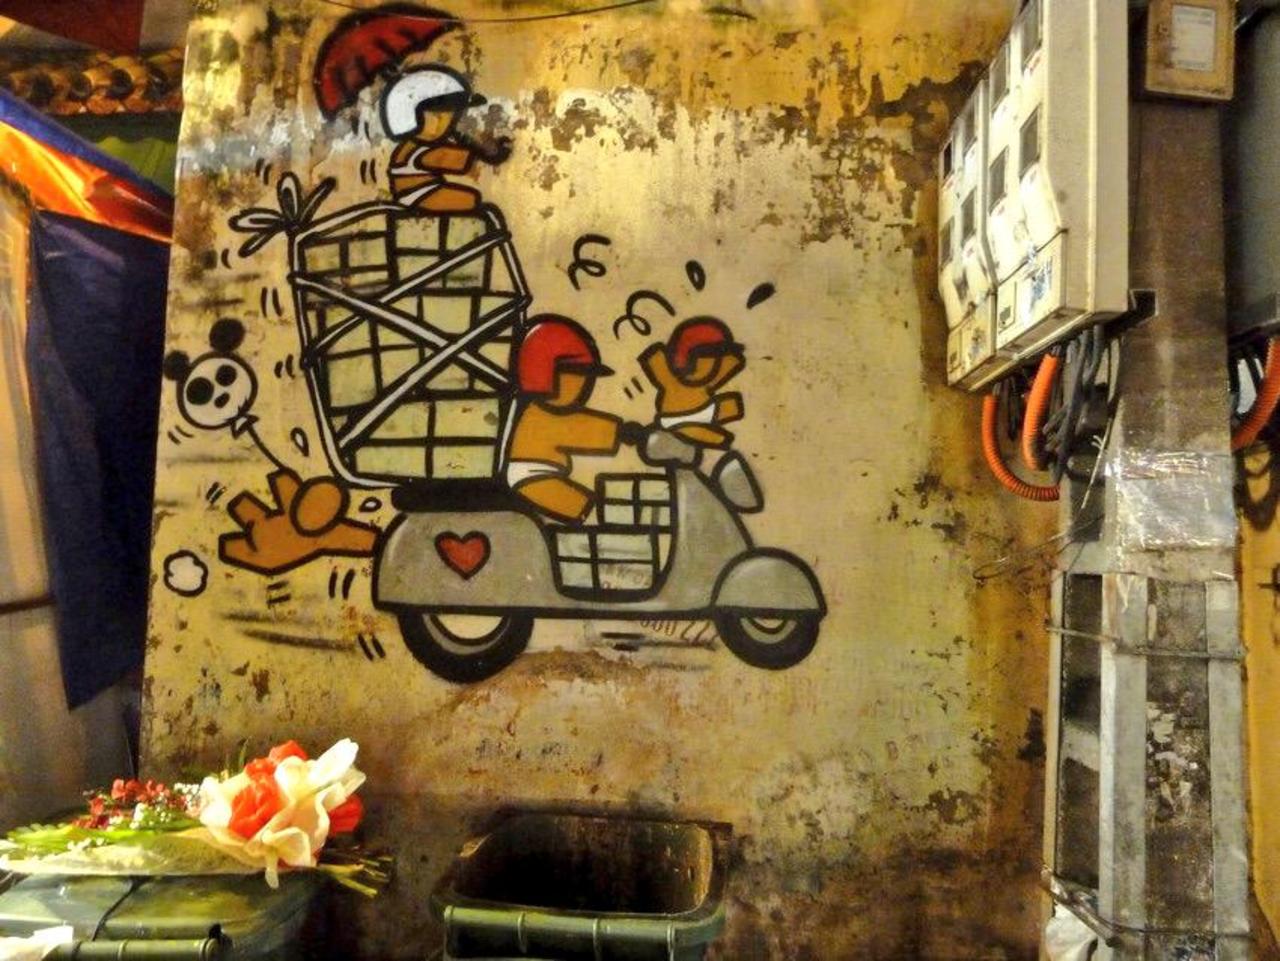 Street Art
Hanoi, Vietnam
#streetart #art #graffiti #mural http://t.co/sIUGNRZ2yh